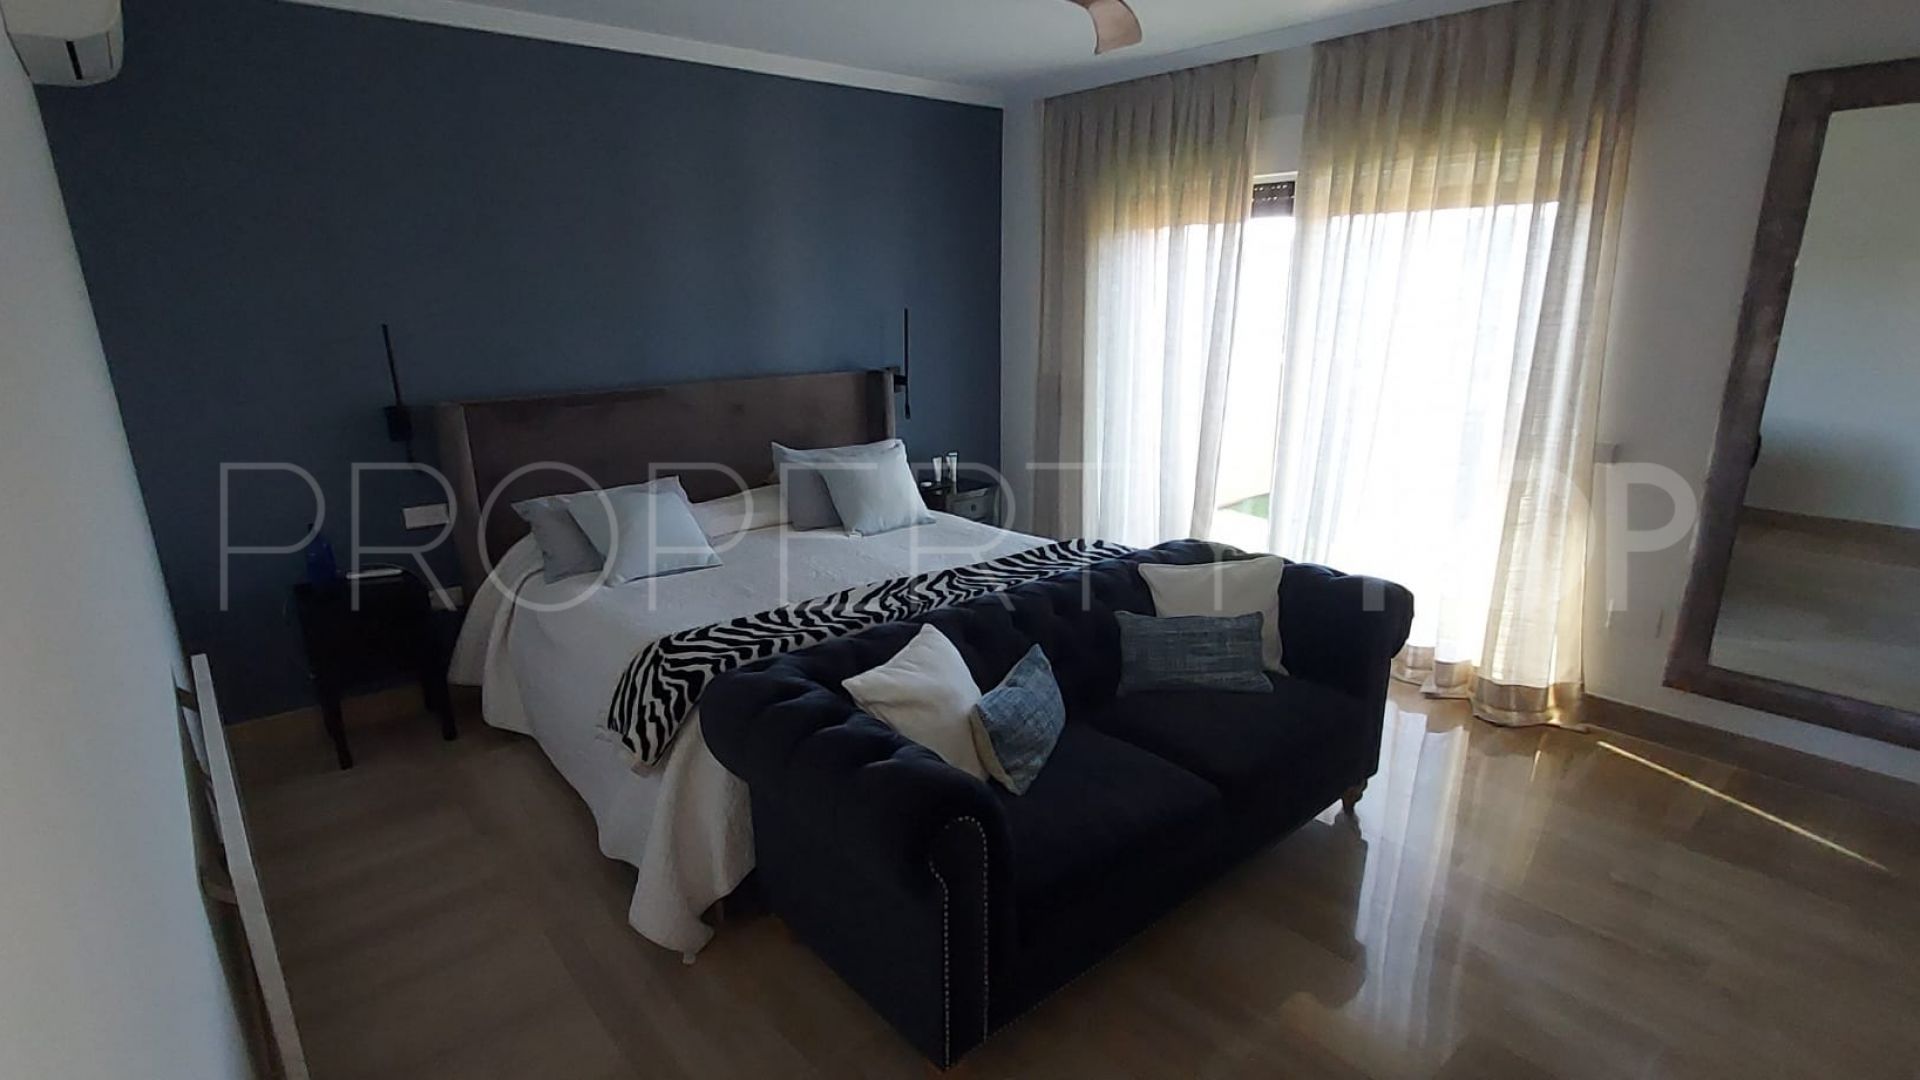 3 bedrooms Almenara Golf duplex penthouse for sale